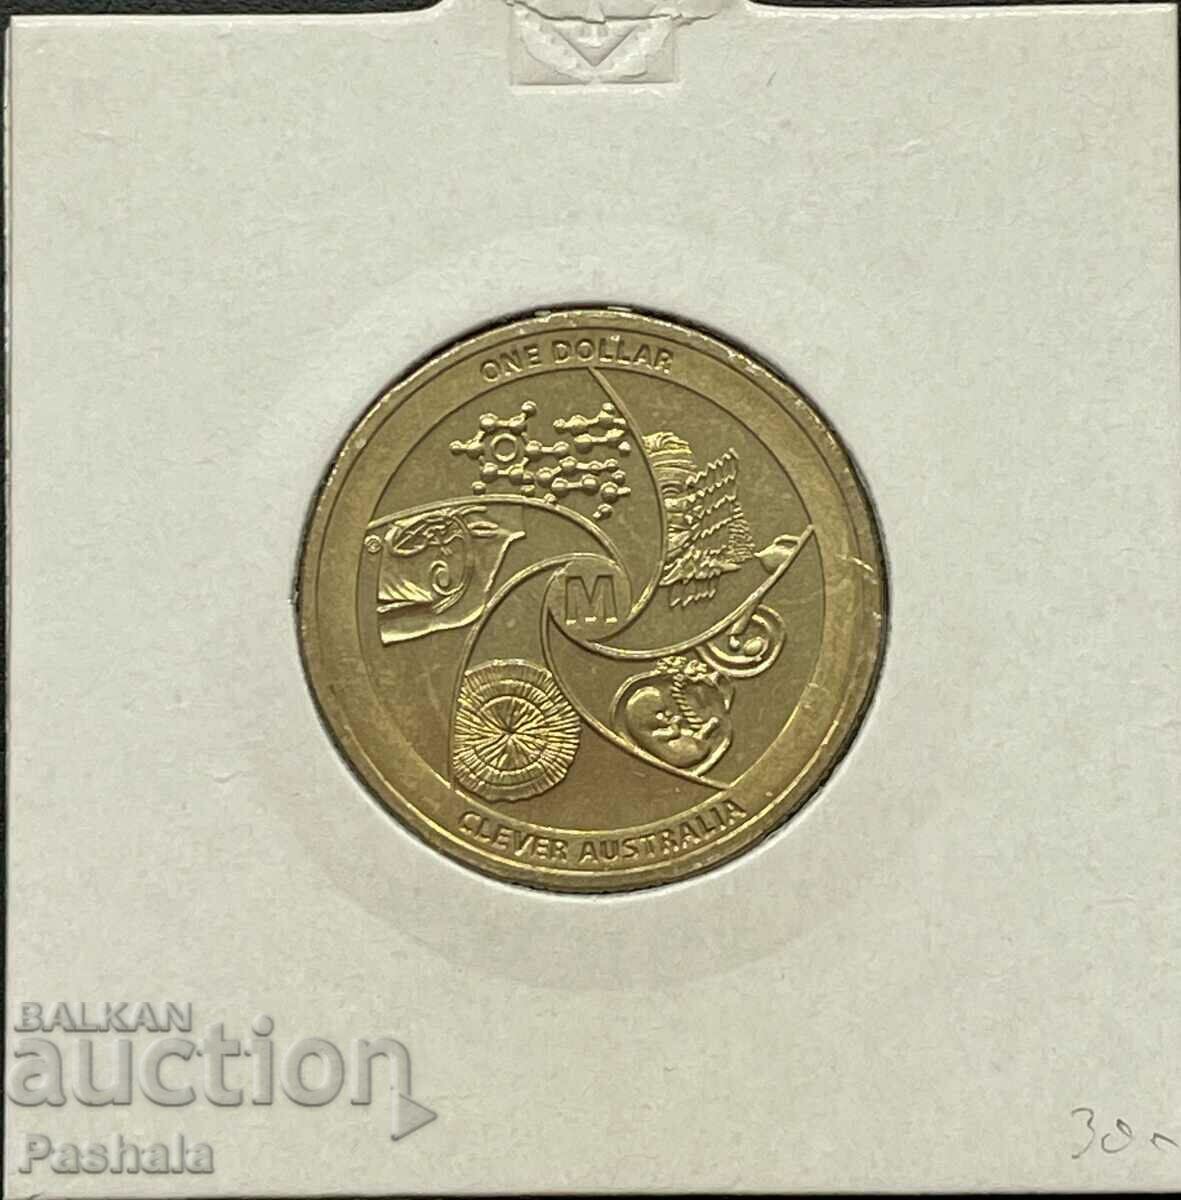 Αυστραλία $1 2014